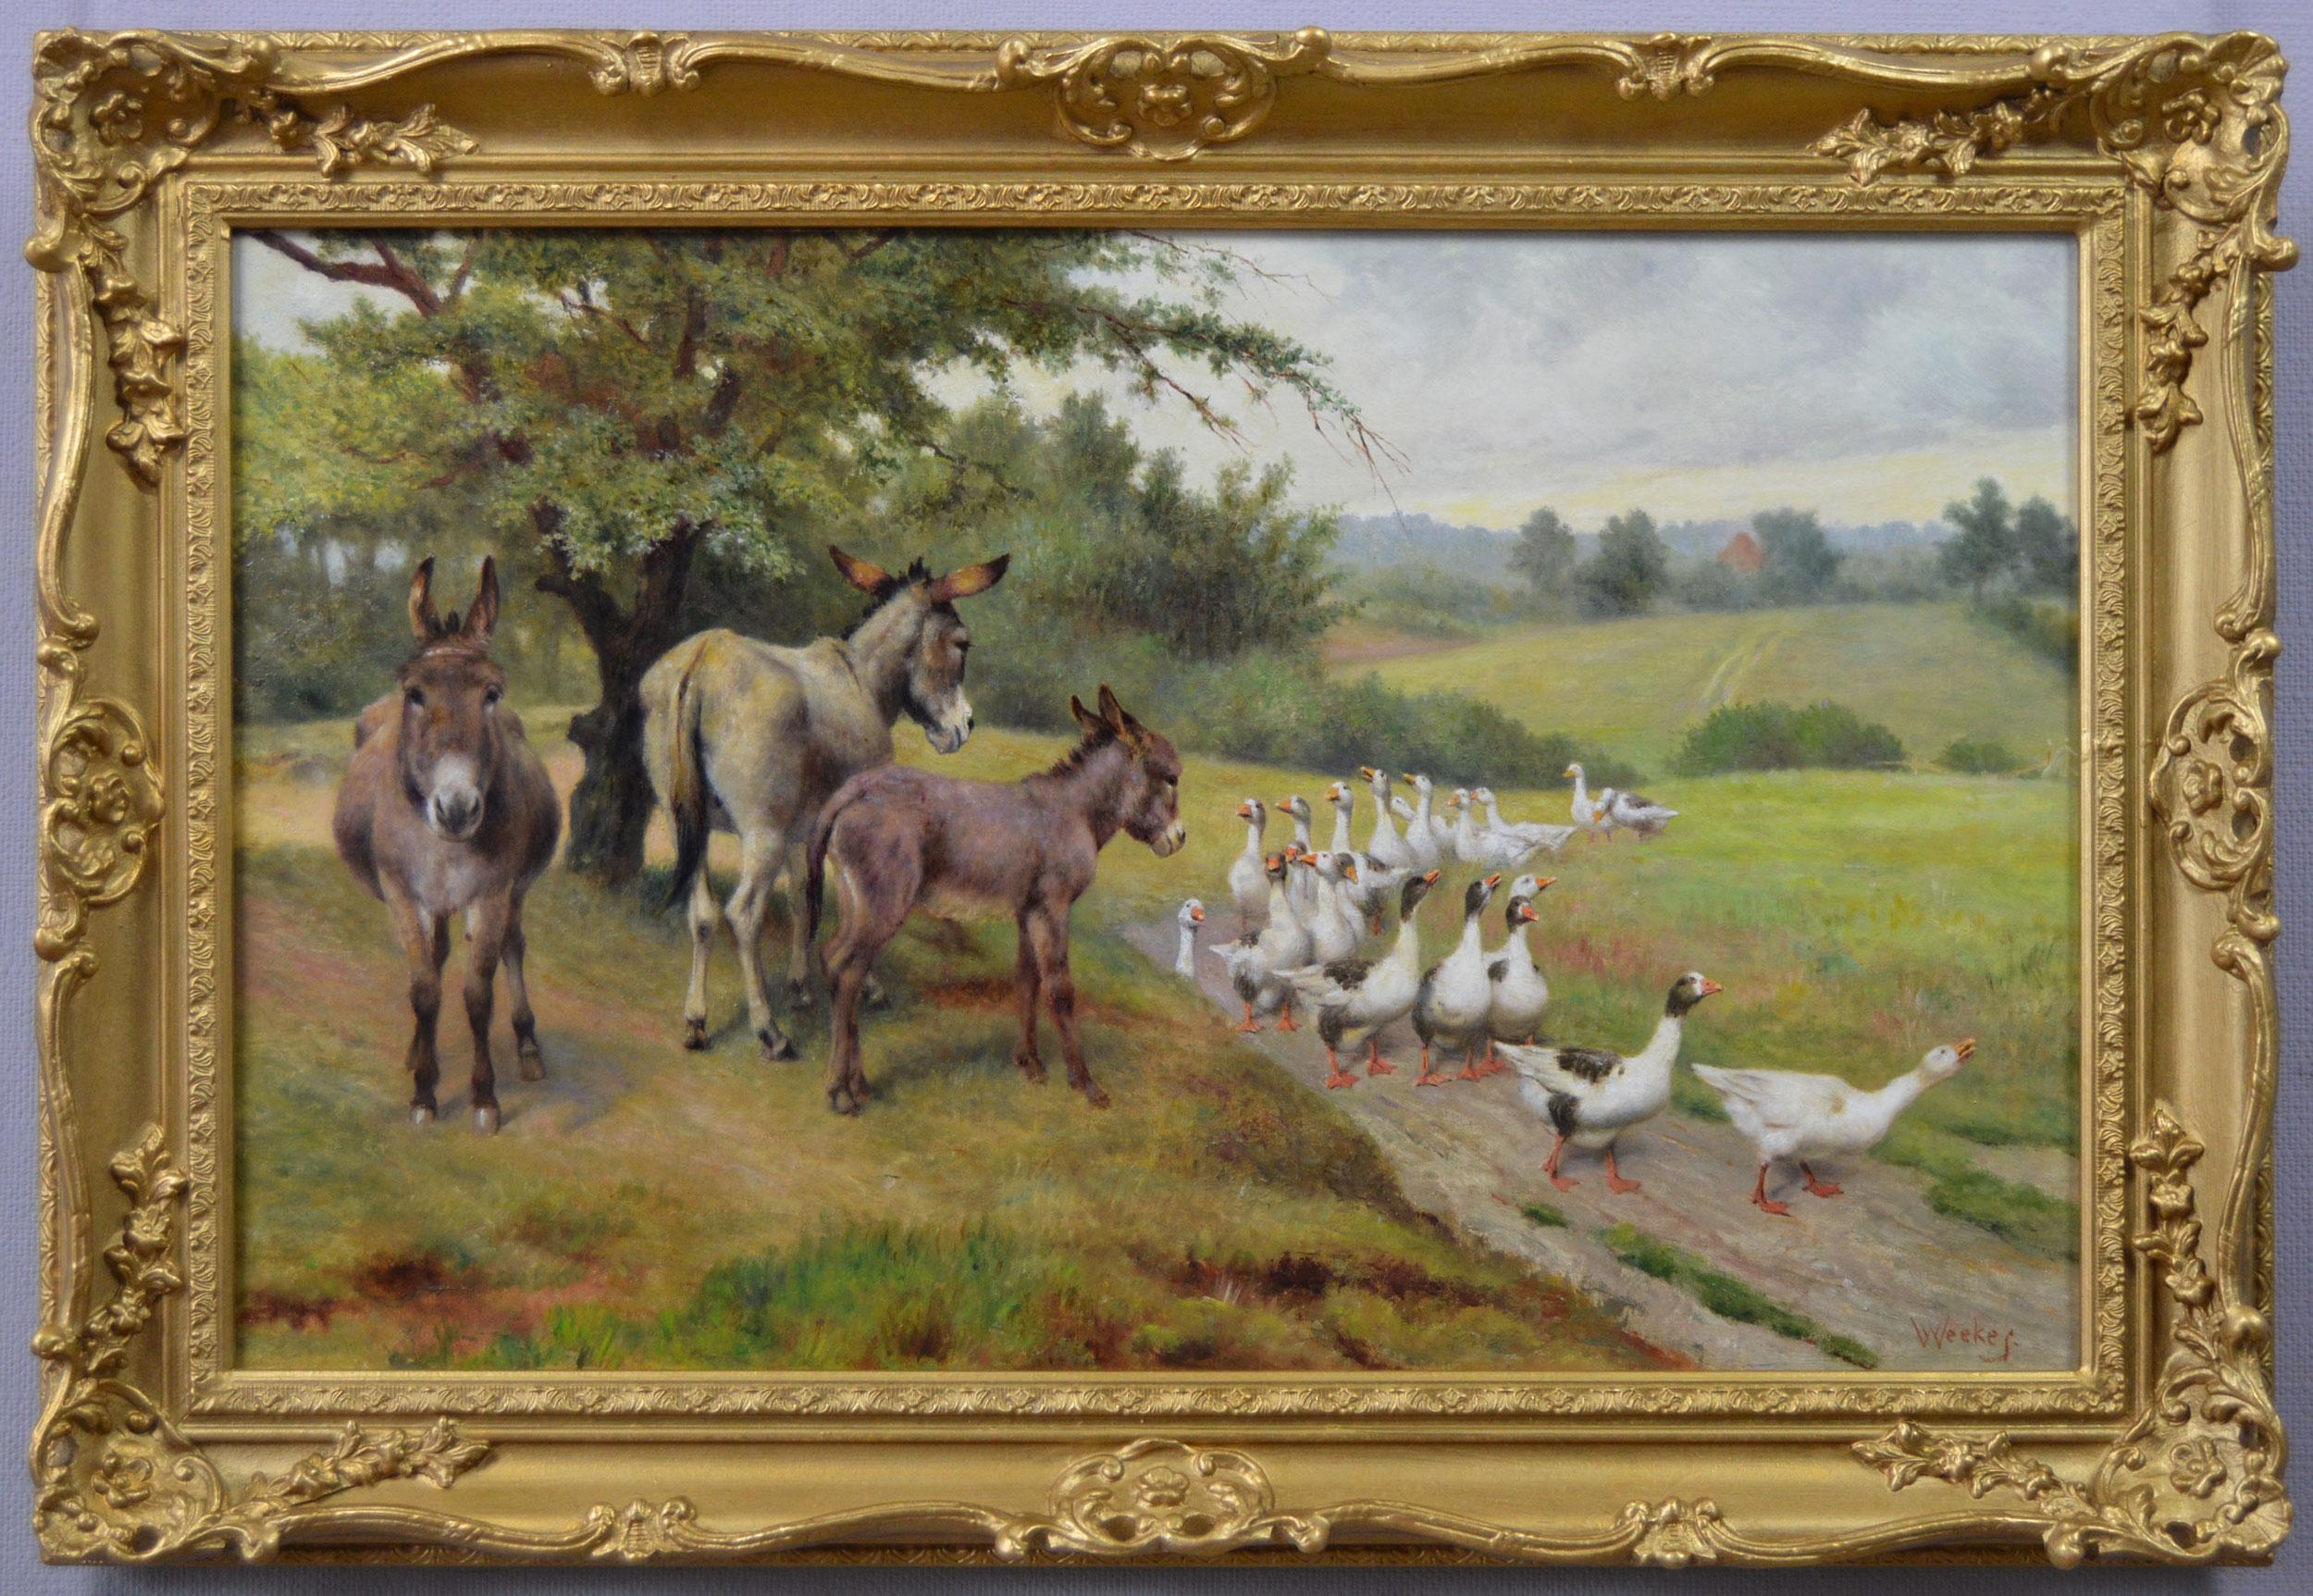 Herbert William Weekes Animal Painting - 19th Century genre oil painting of donkeys & geese